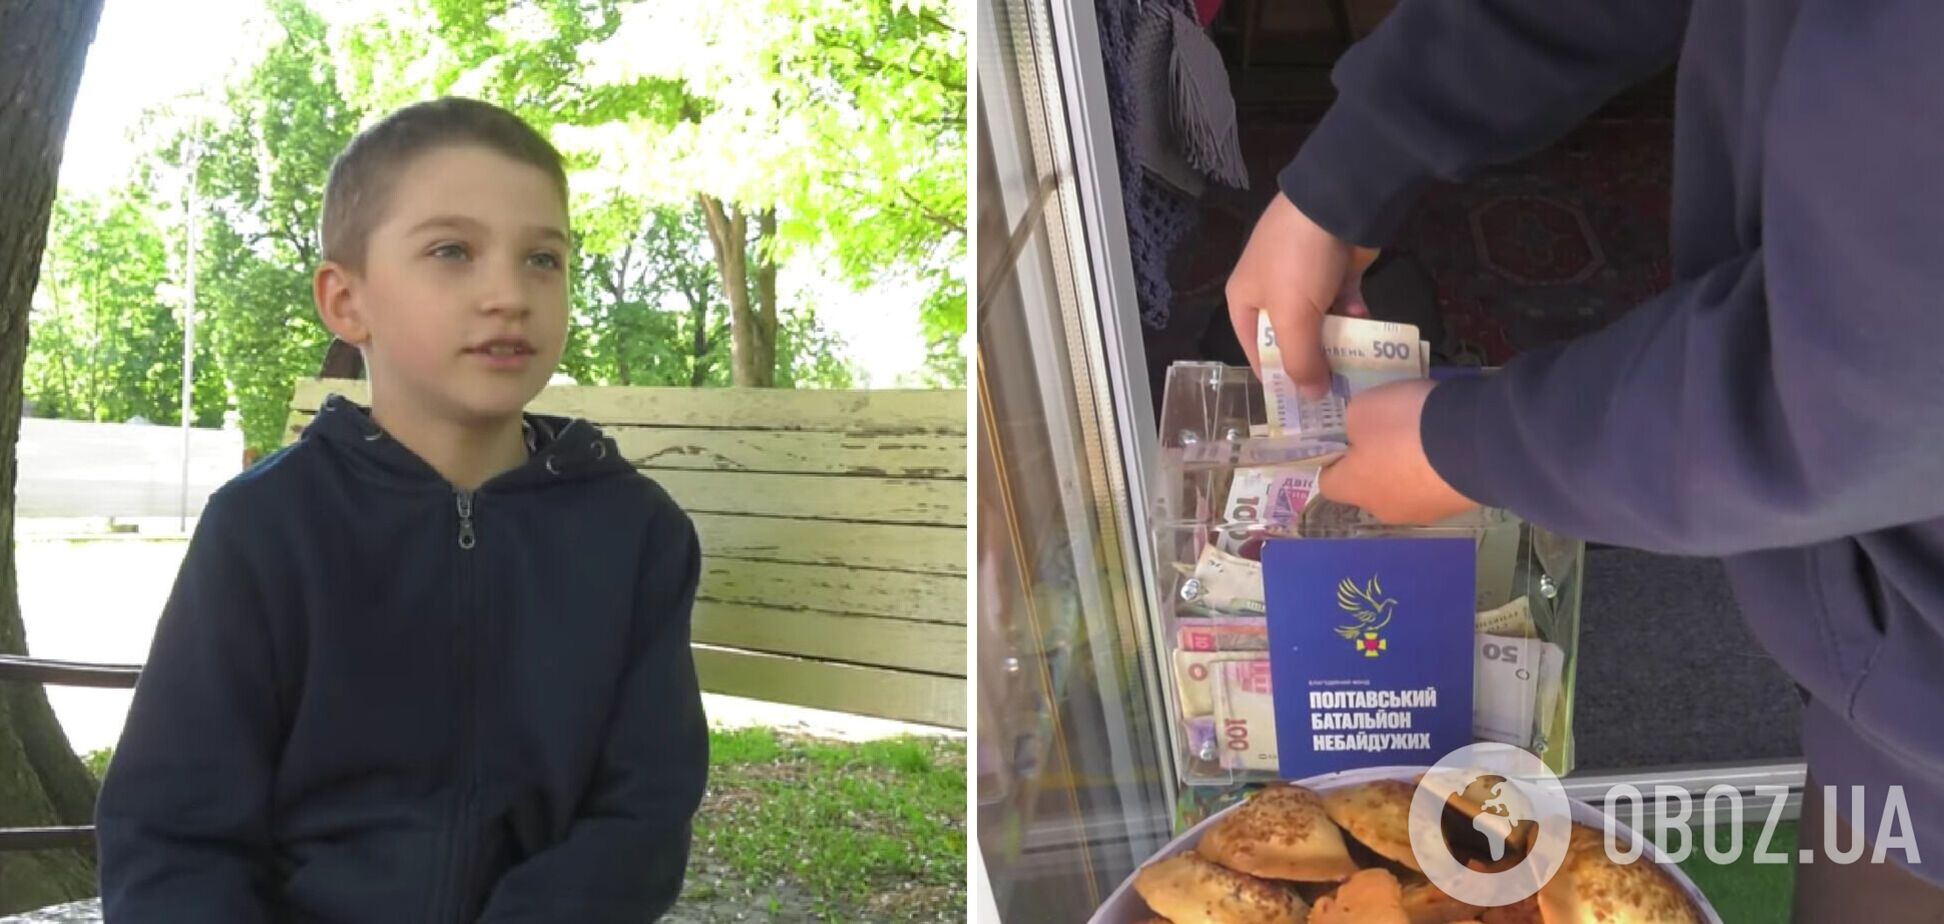 8-летний мальчик из Полтавы отдал деньги, которые собирал четыре года, на автомобиль для ВСУ. Видео